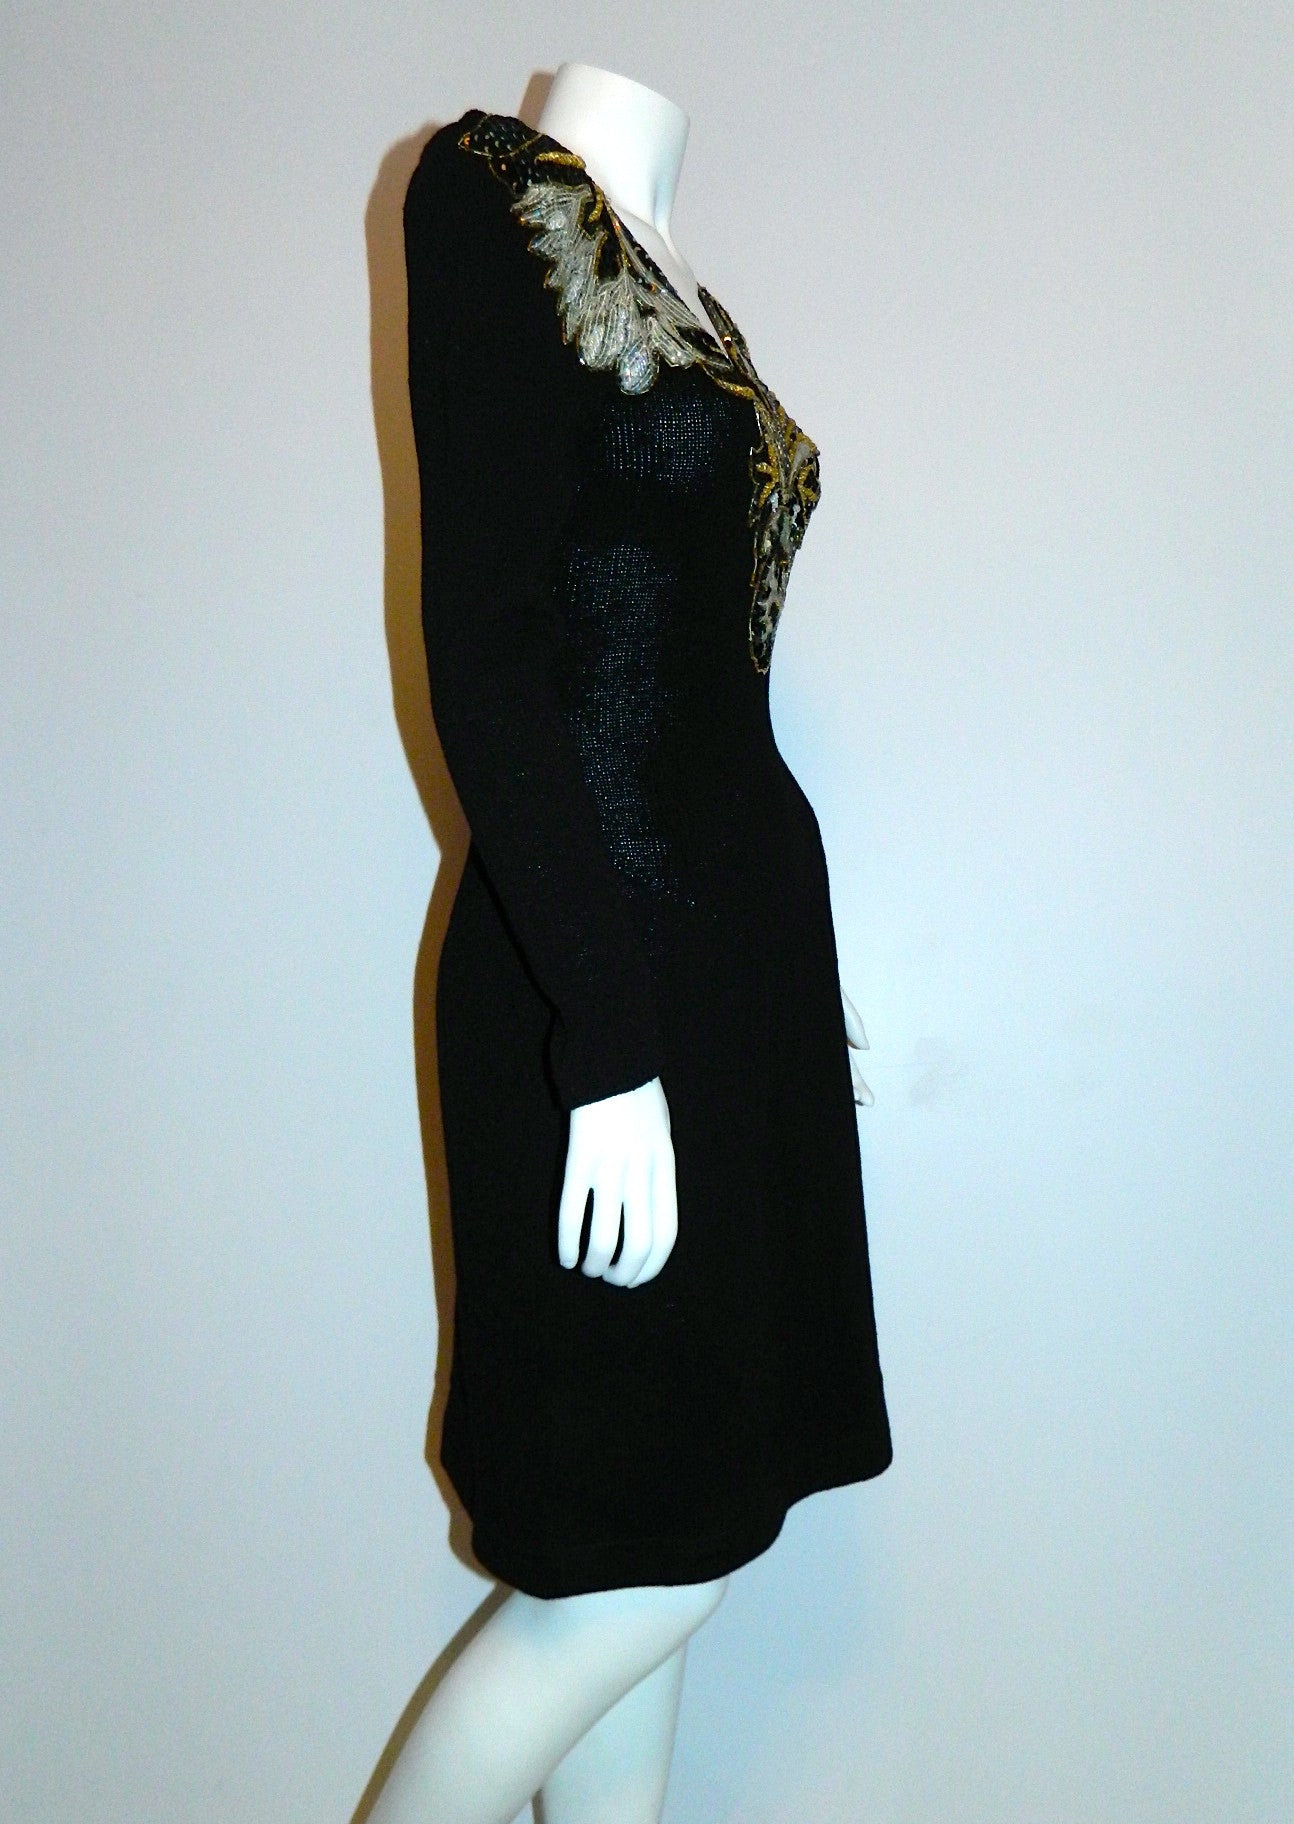 1980s GLAM black dress vintage Pat Sandler Wellmore sequin front knit dress